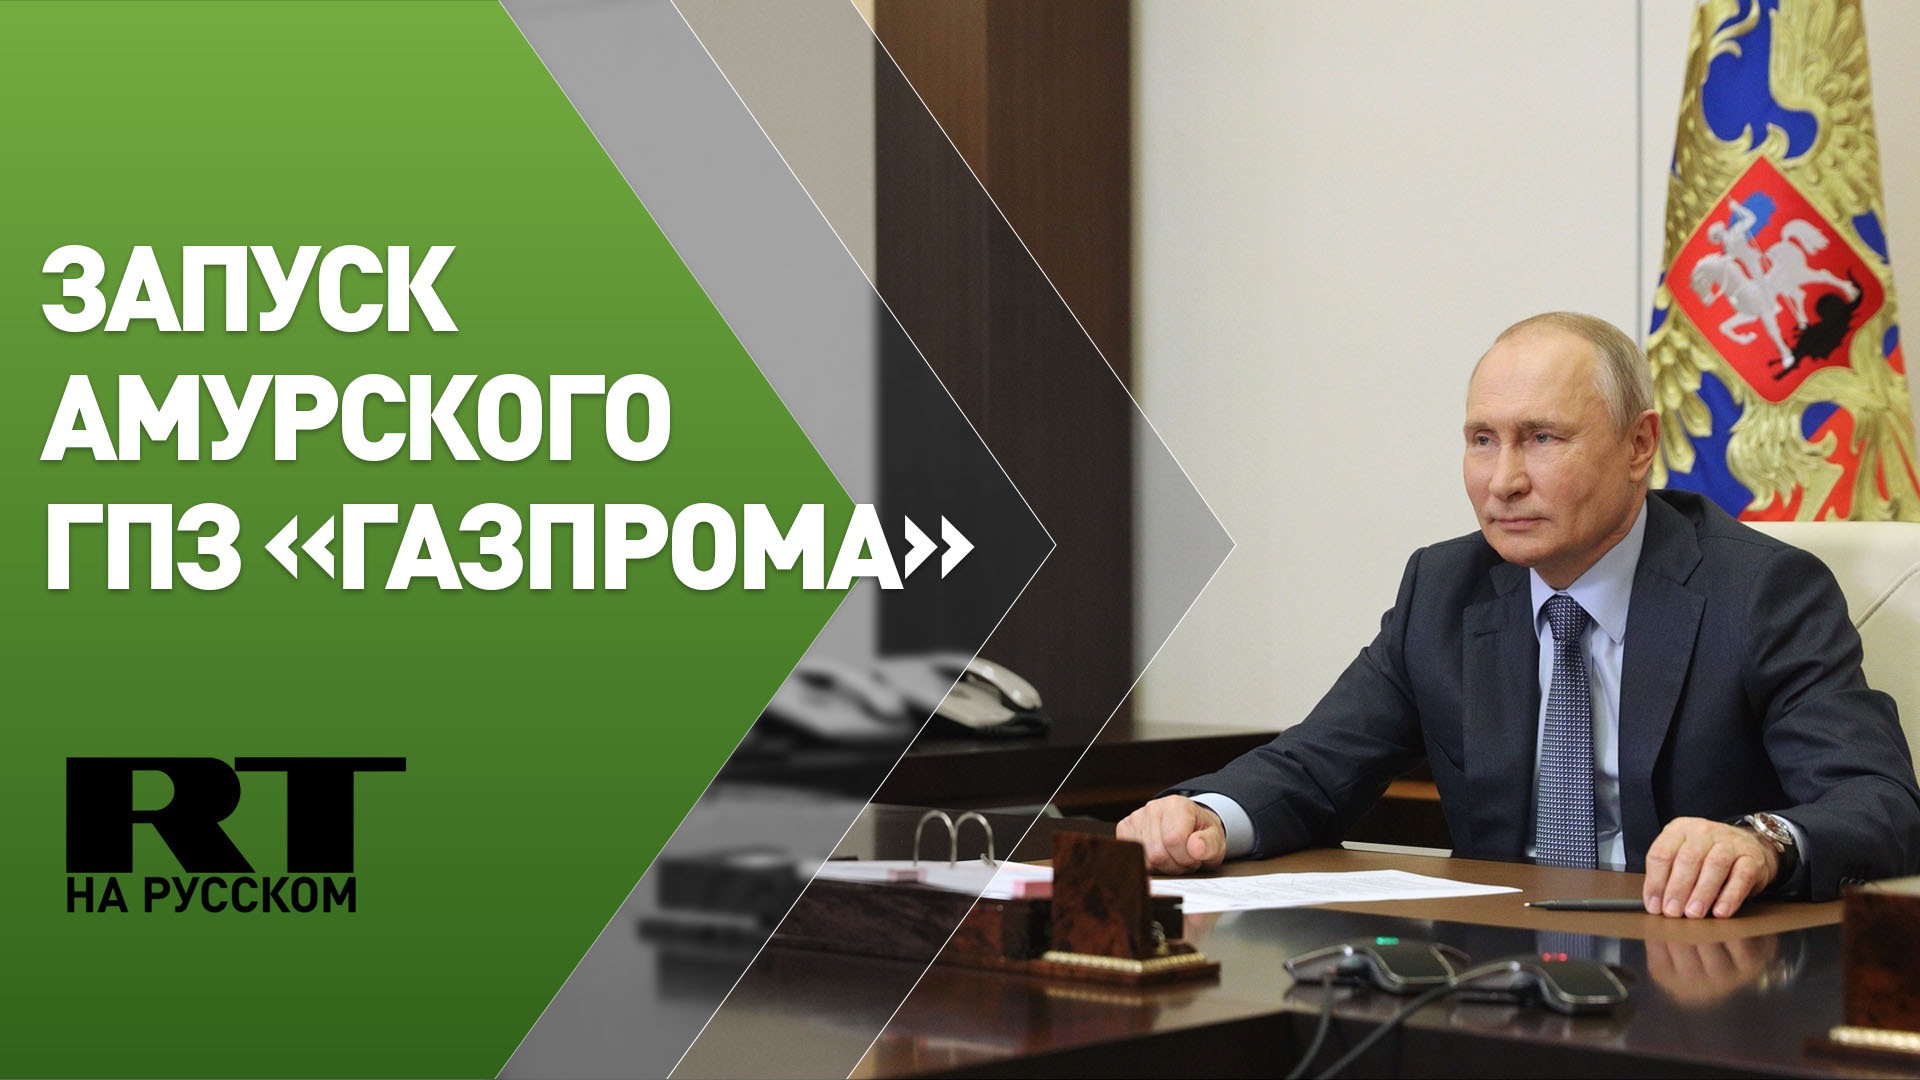 Путин участвует в запуске Амурского ГПЗ «Газпрома» — трансляция